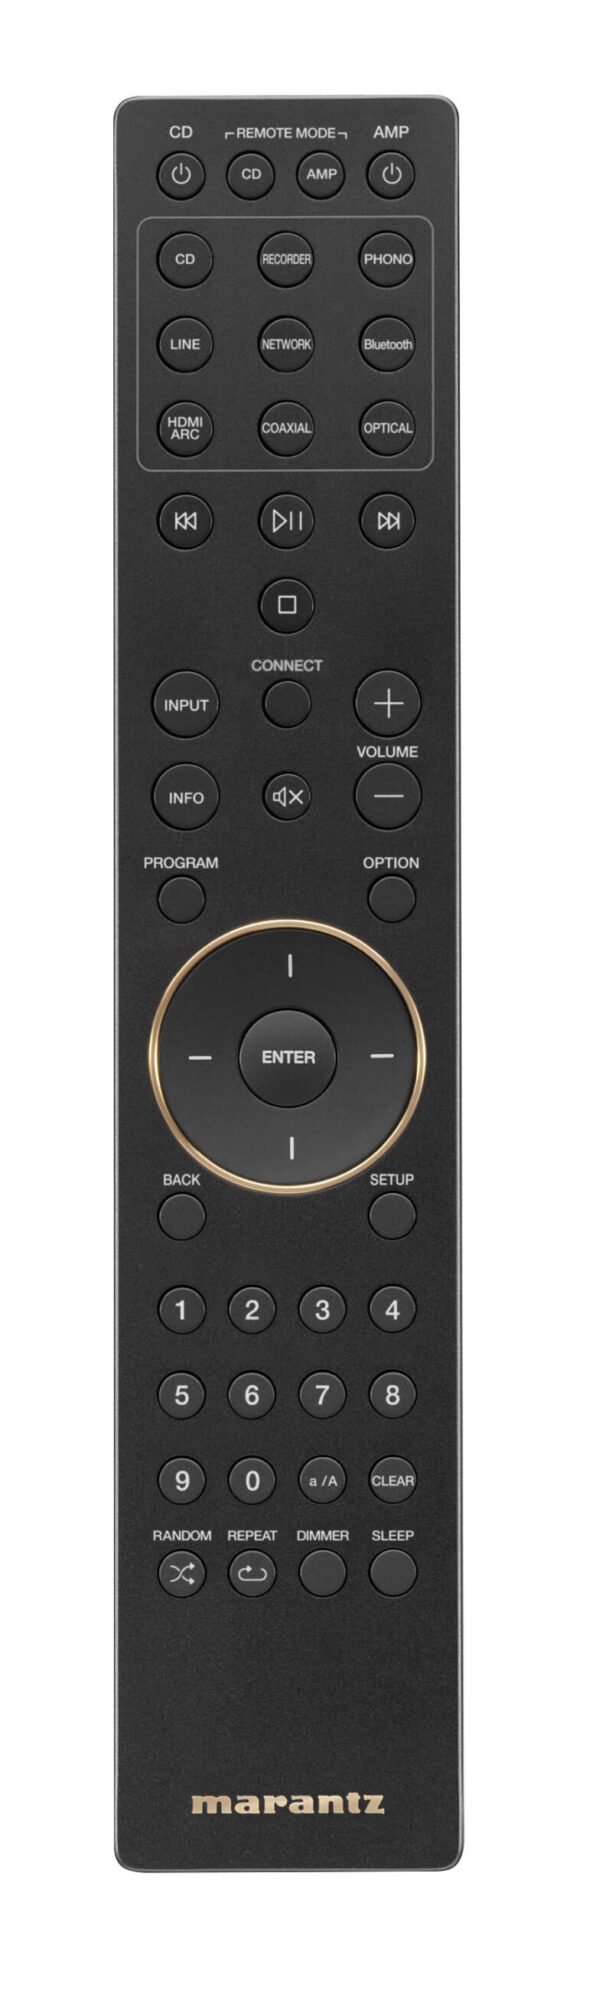 Model 40 remote 770x2615 1